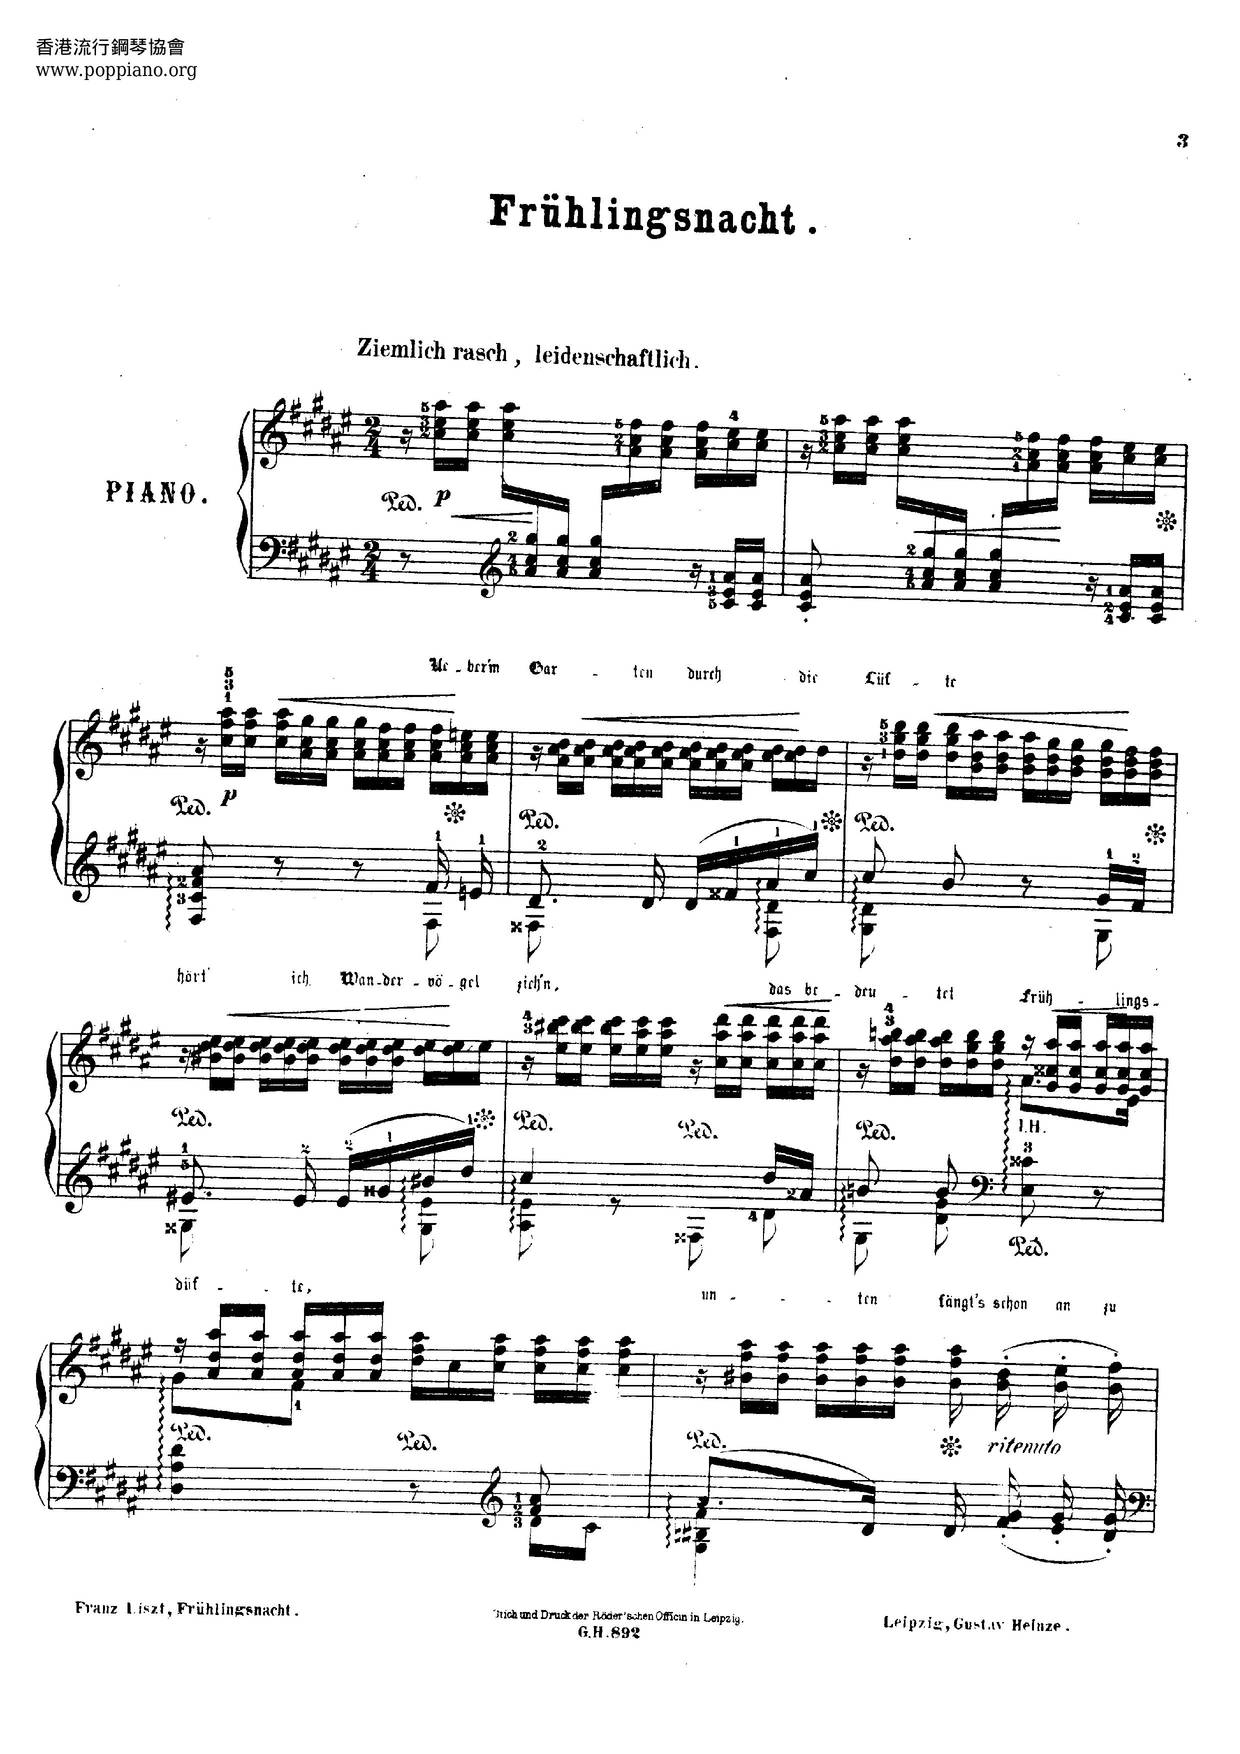 Frühlingsnacht, Lied Von Schumann, S.568琴譜